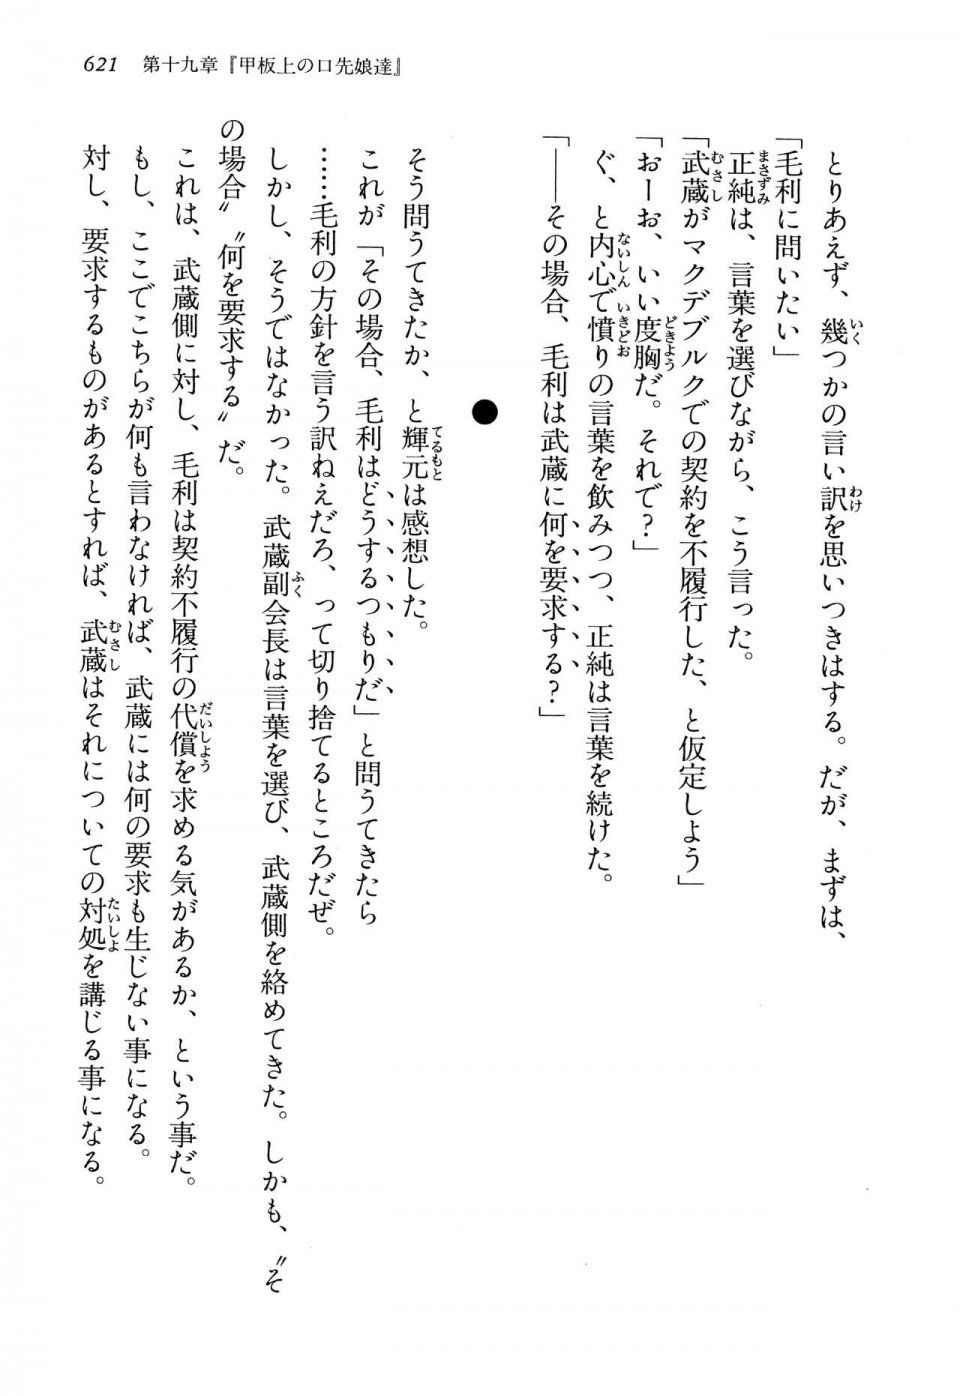 Kyoukai Senjou no Horizon LN Vol 13(6A) - Photo #621